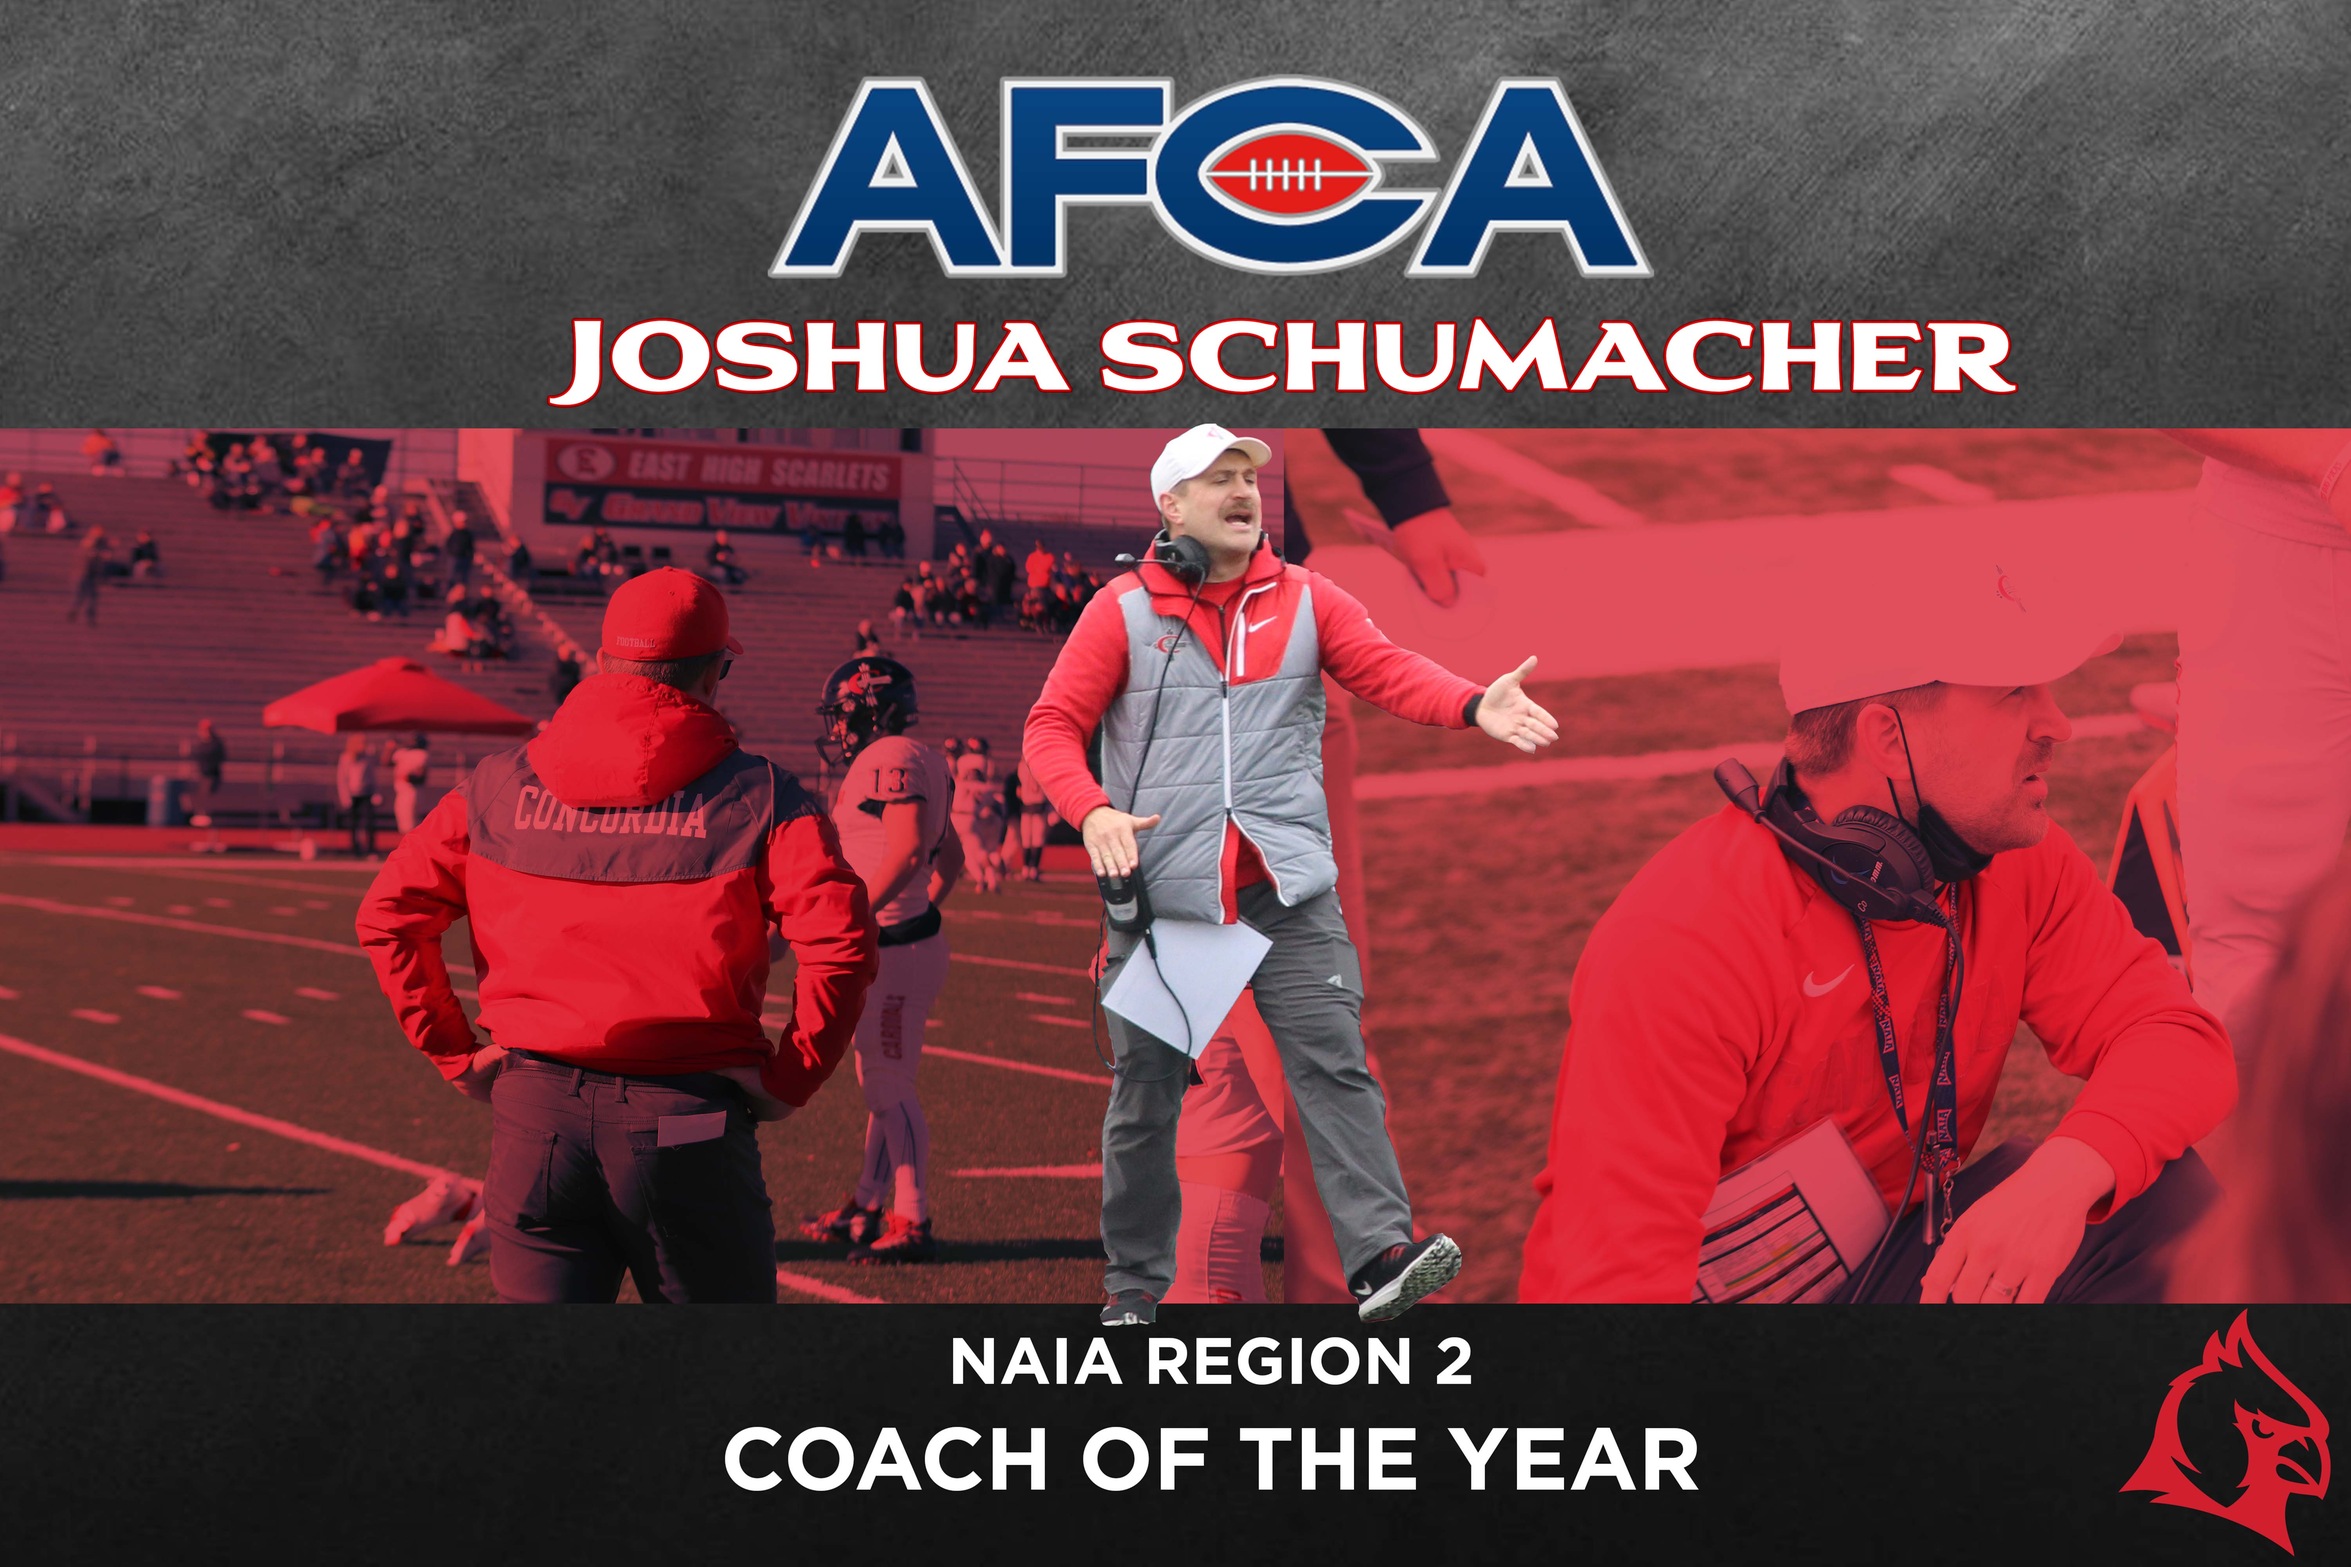 Joshua Schumacher earns second consecutive AFCA NAIA Region 2 Coach of the Year award